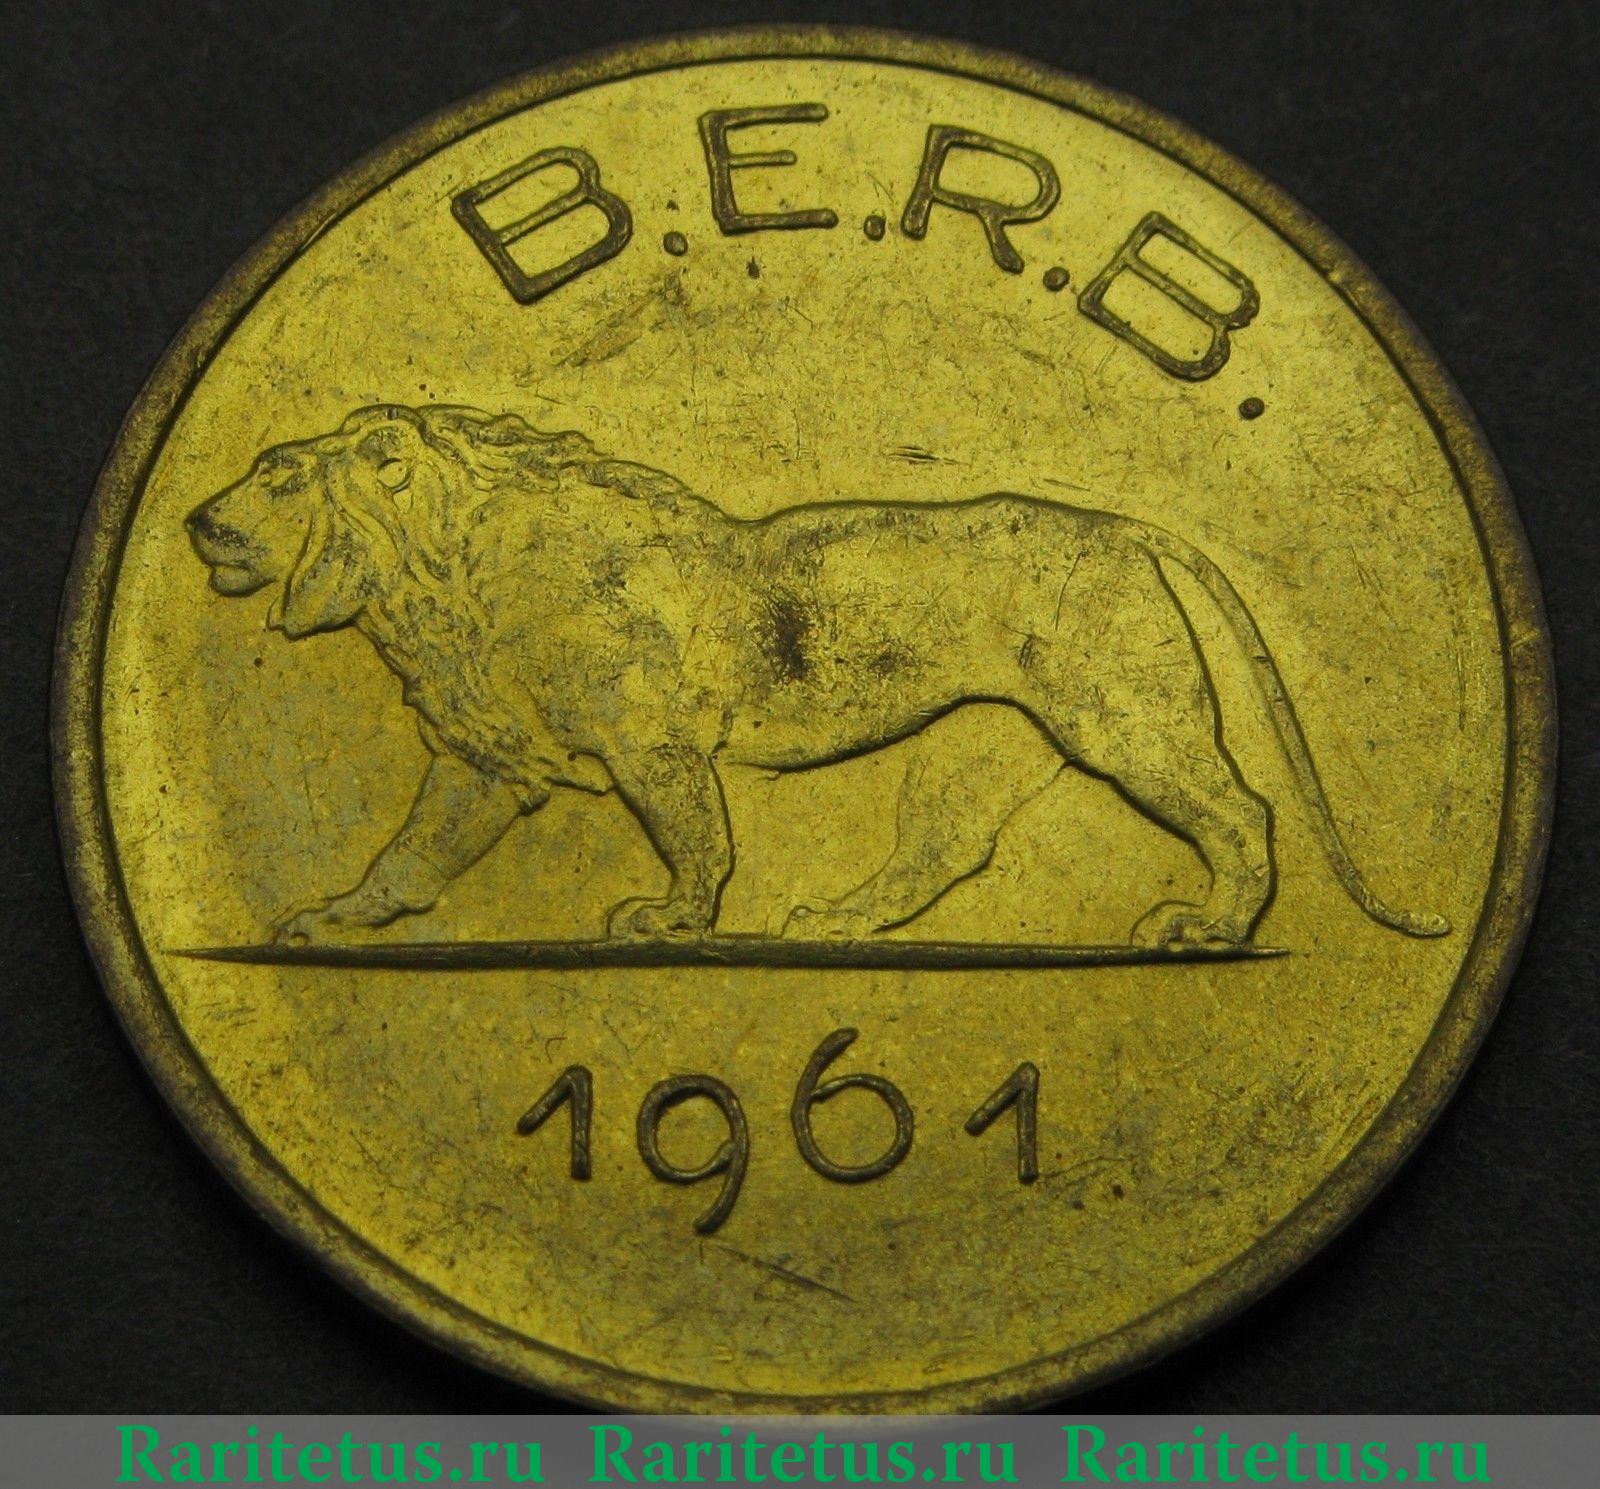 Rwanda Burundi 1961 Lion 1 Franc Coin,UNC